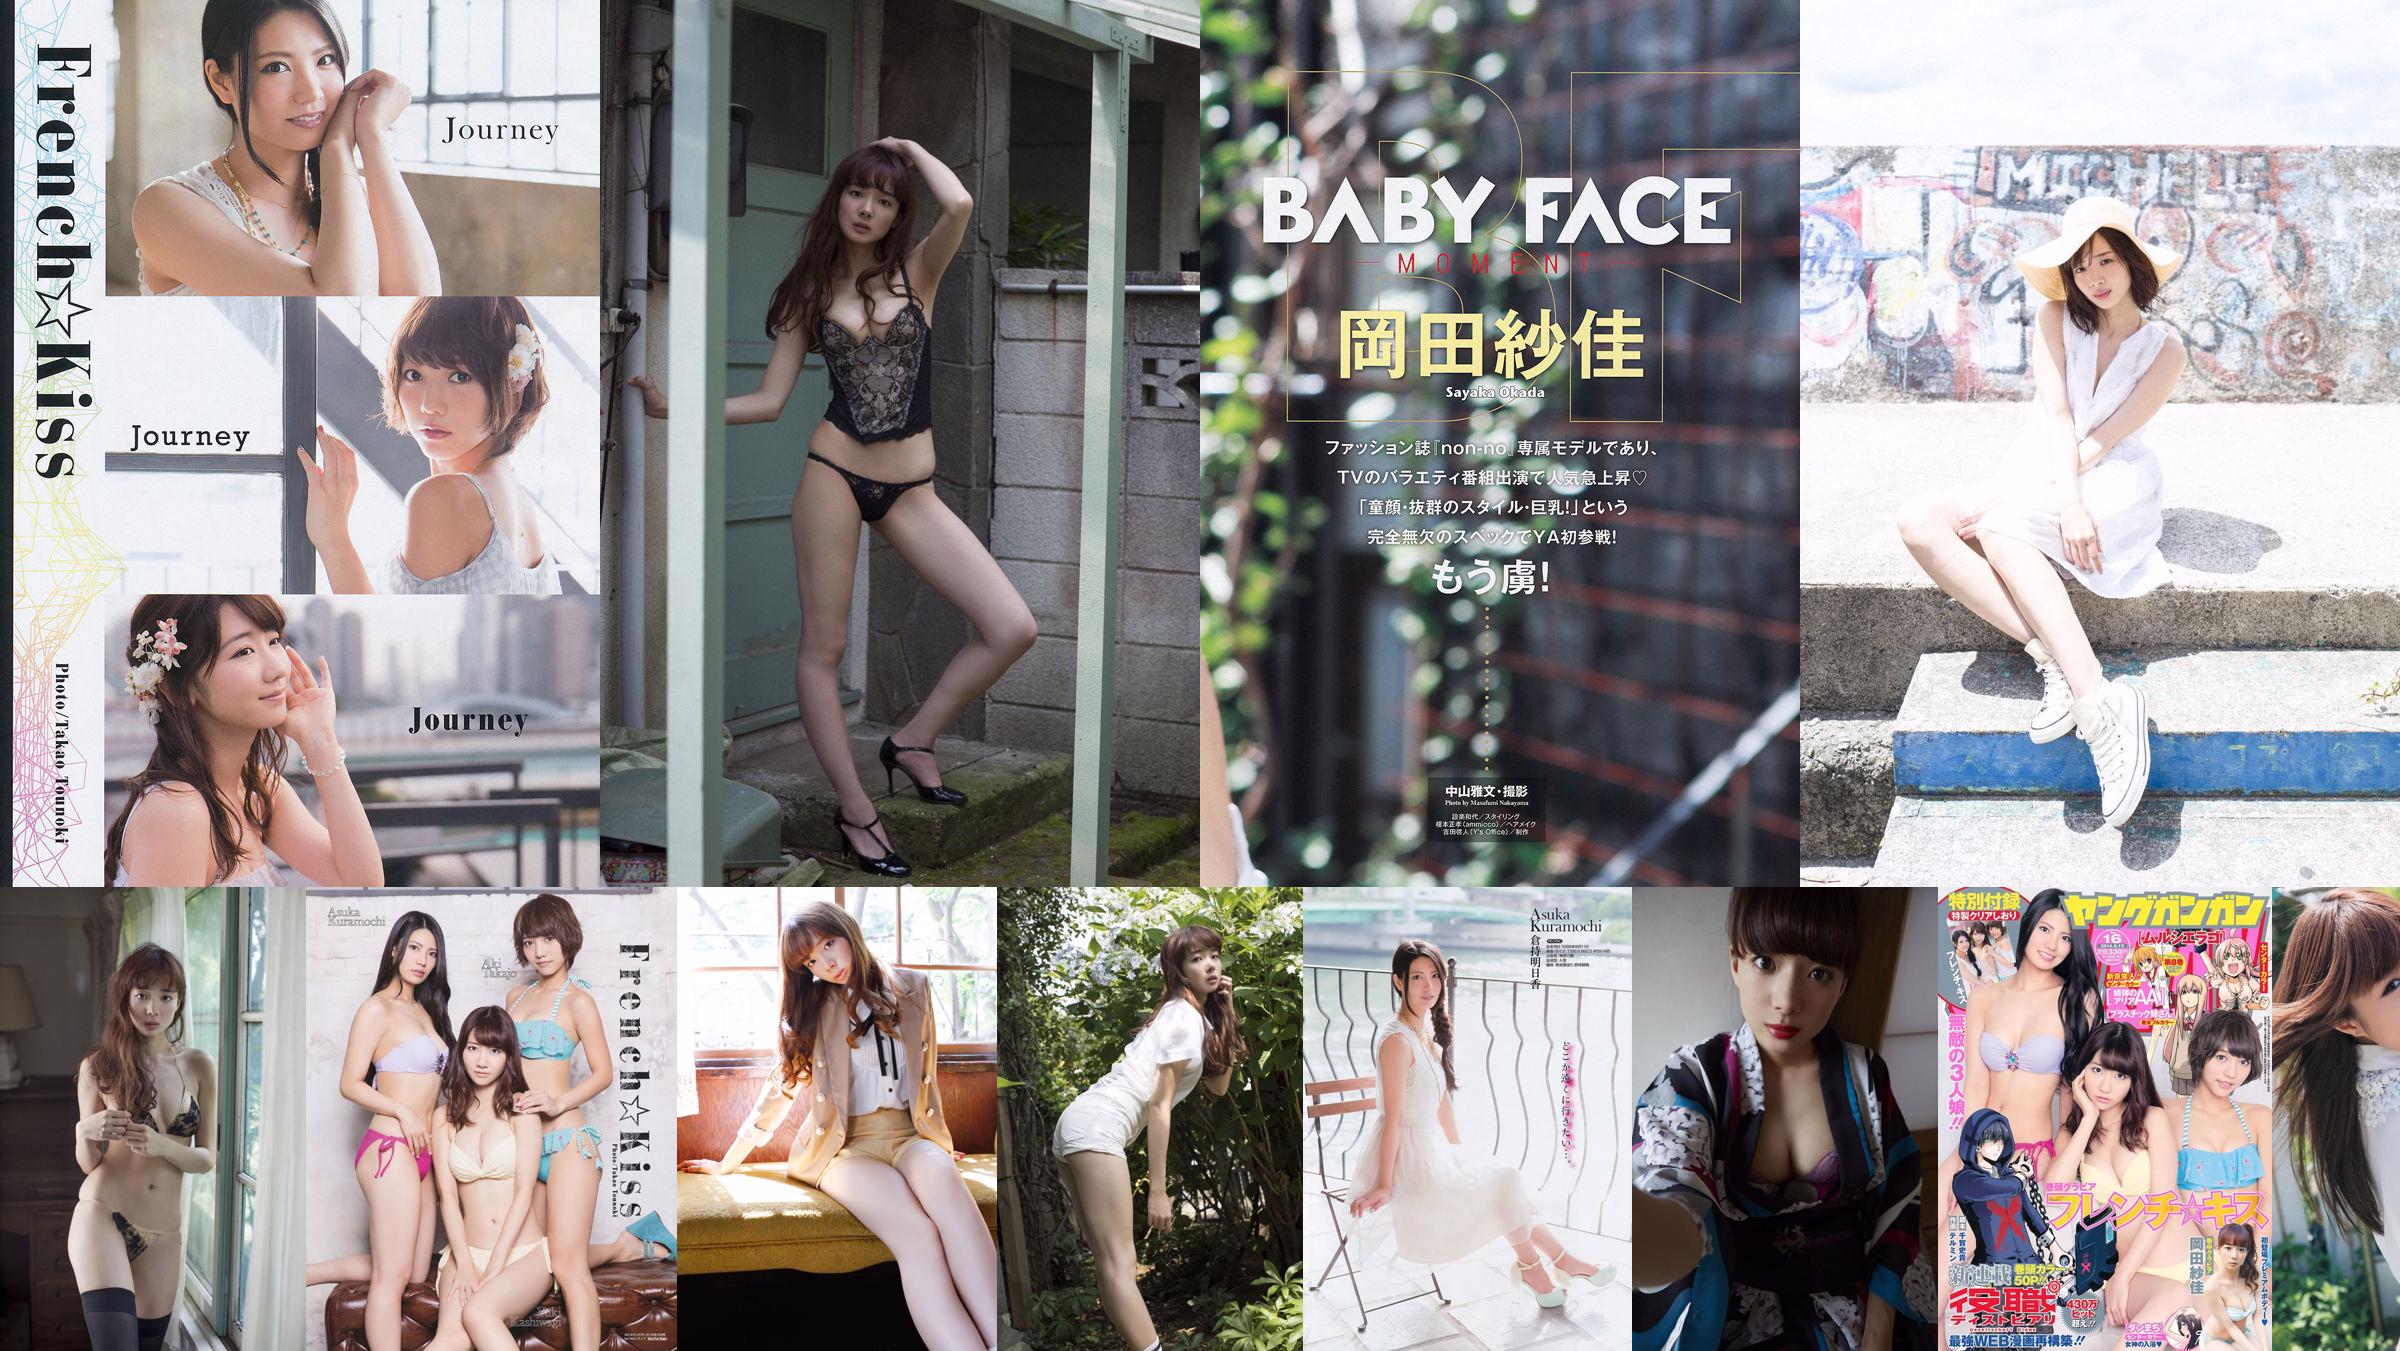 Sayaka Okada Up Up Girls (Kakko) Nishikawa Yui [Young Animal] 2014 No.12 Photo Magazine No.7dc063 Pagina 1